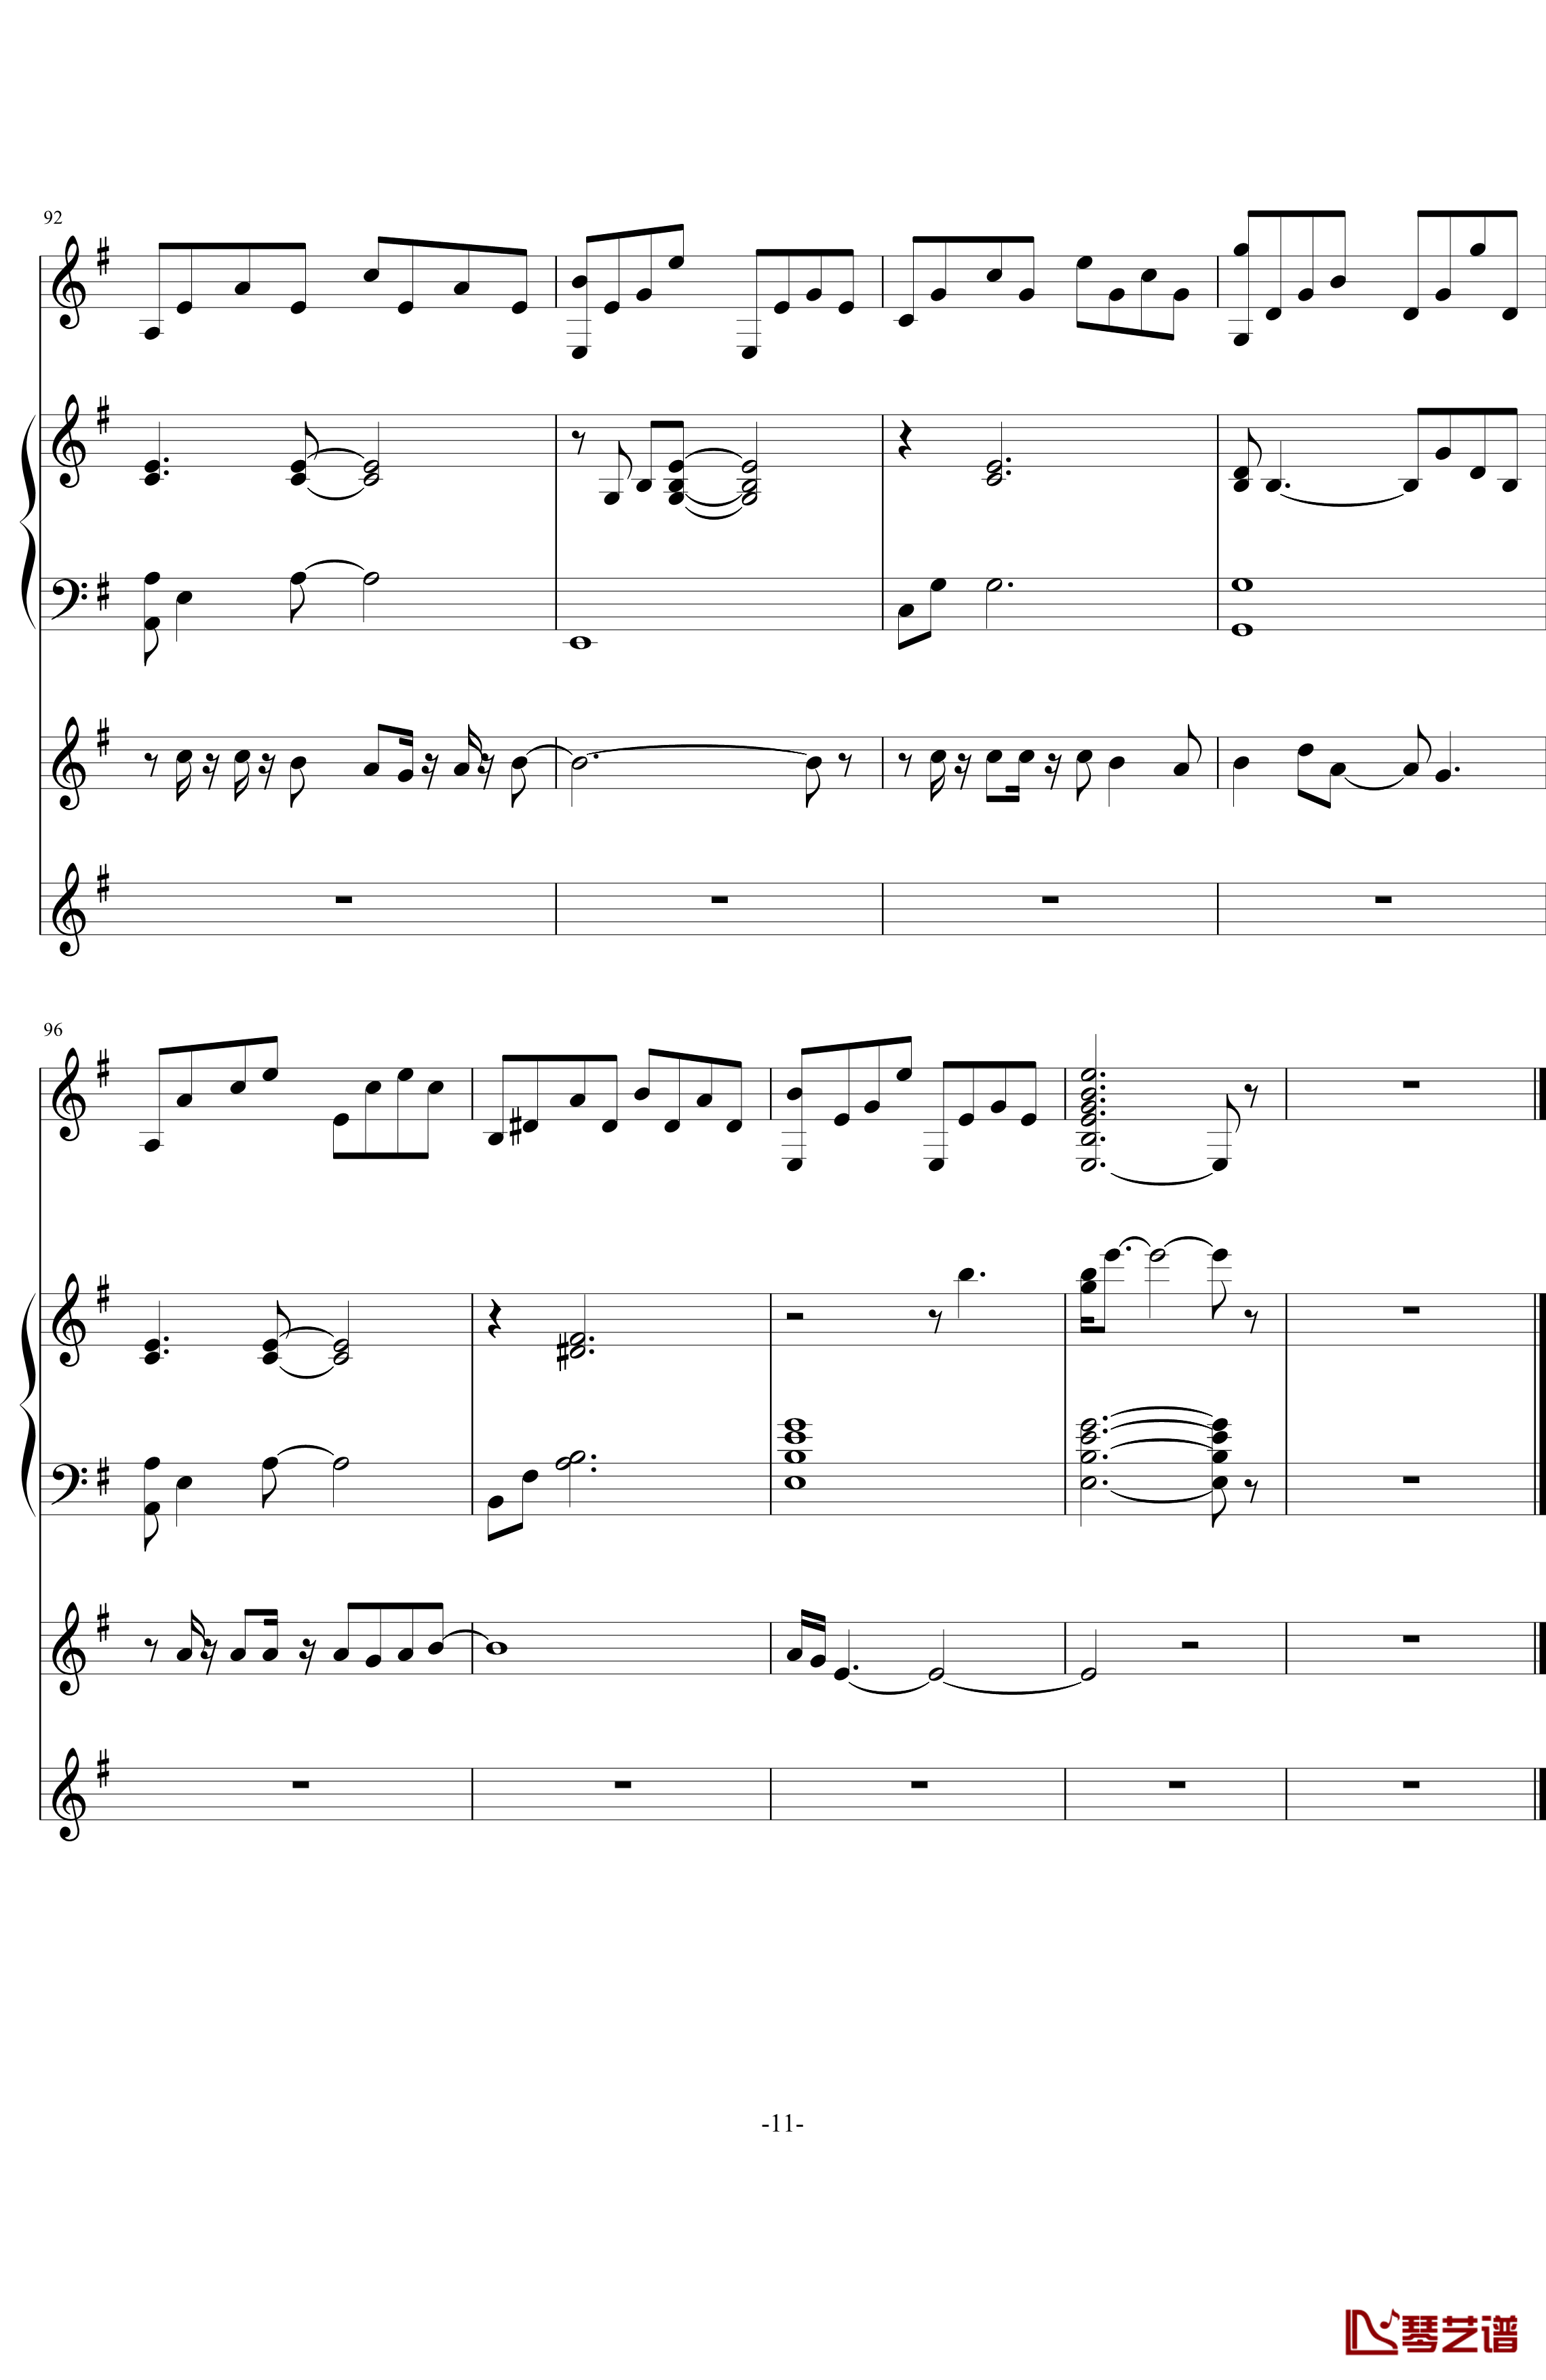 中提琴协奏版钢琴谱-含有钢琴独奏-老奠11